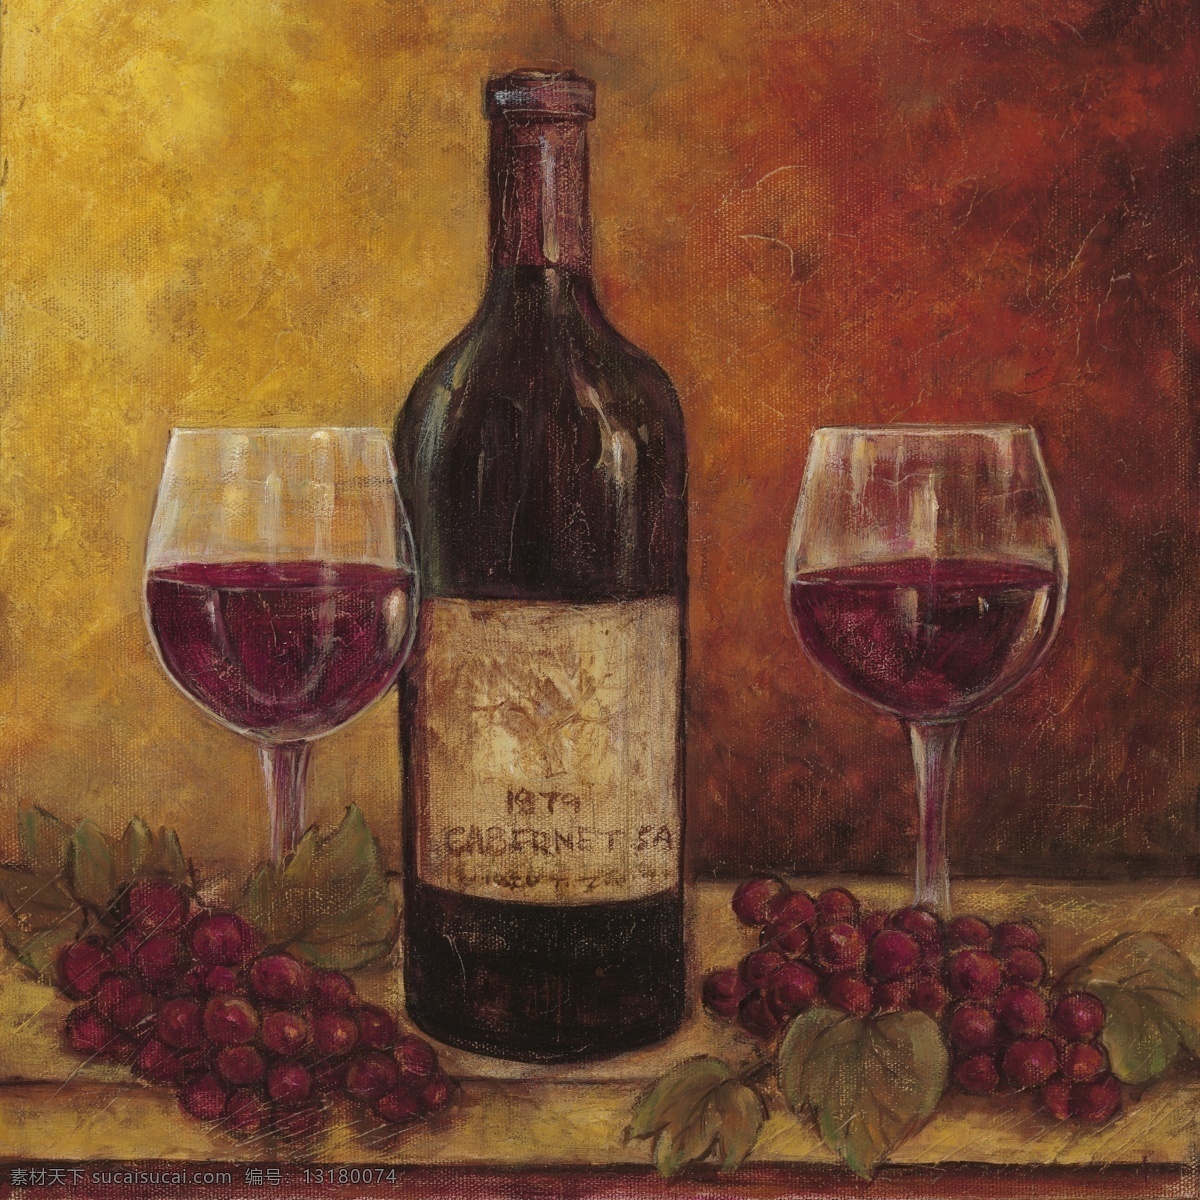 红酒 葡萄 高脚杯 酒瓶 写实 油画作品 西方美术 红色调 家居装饰素材